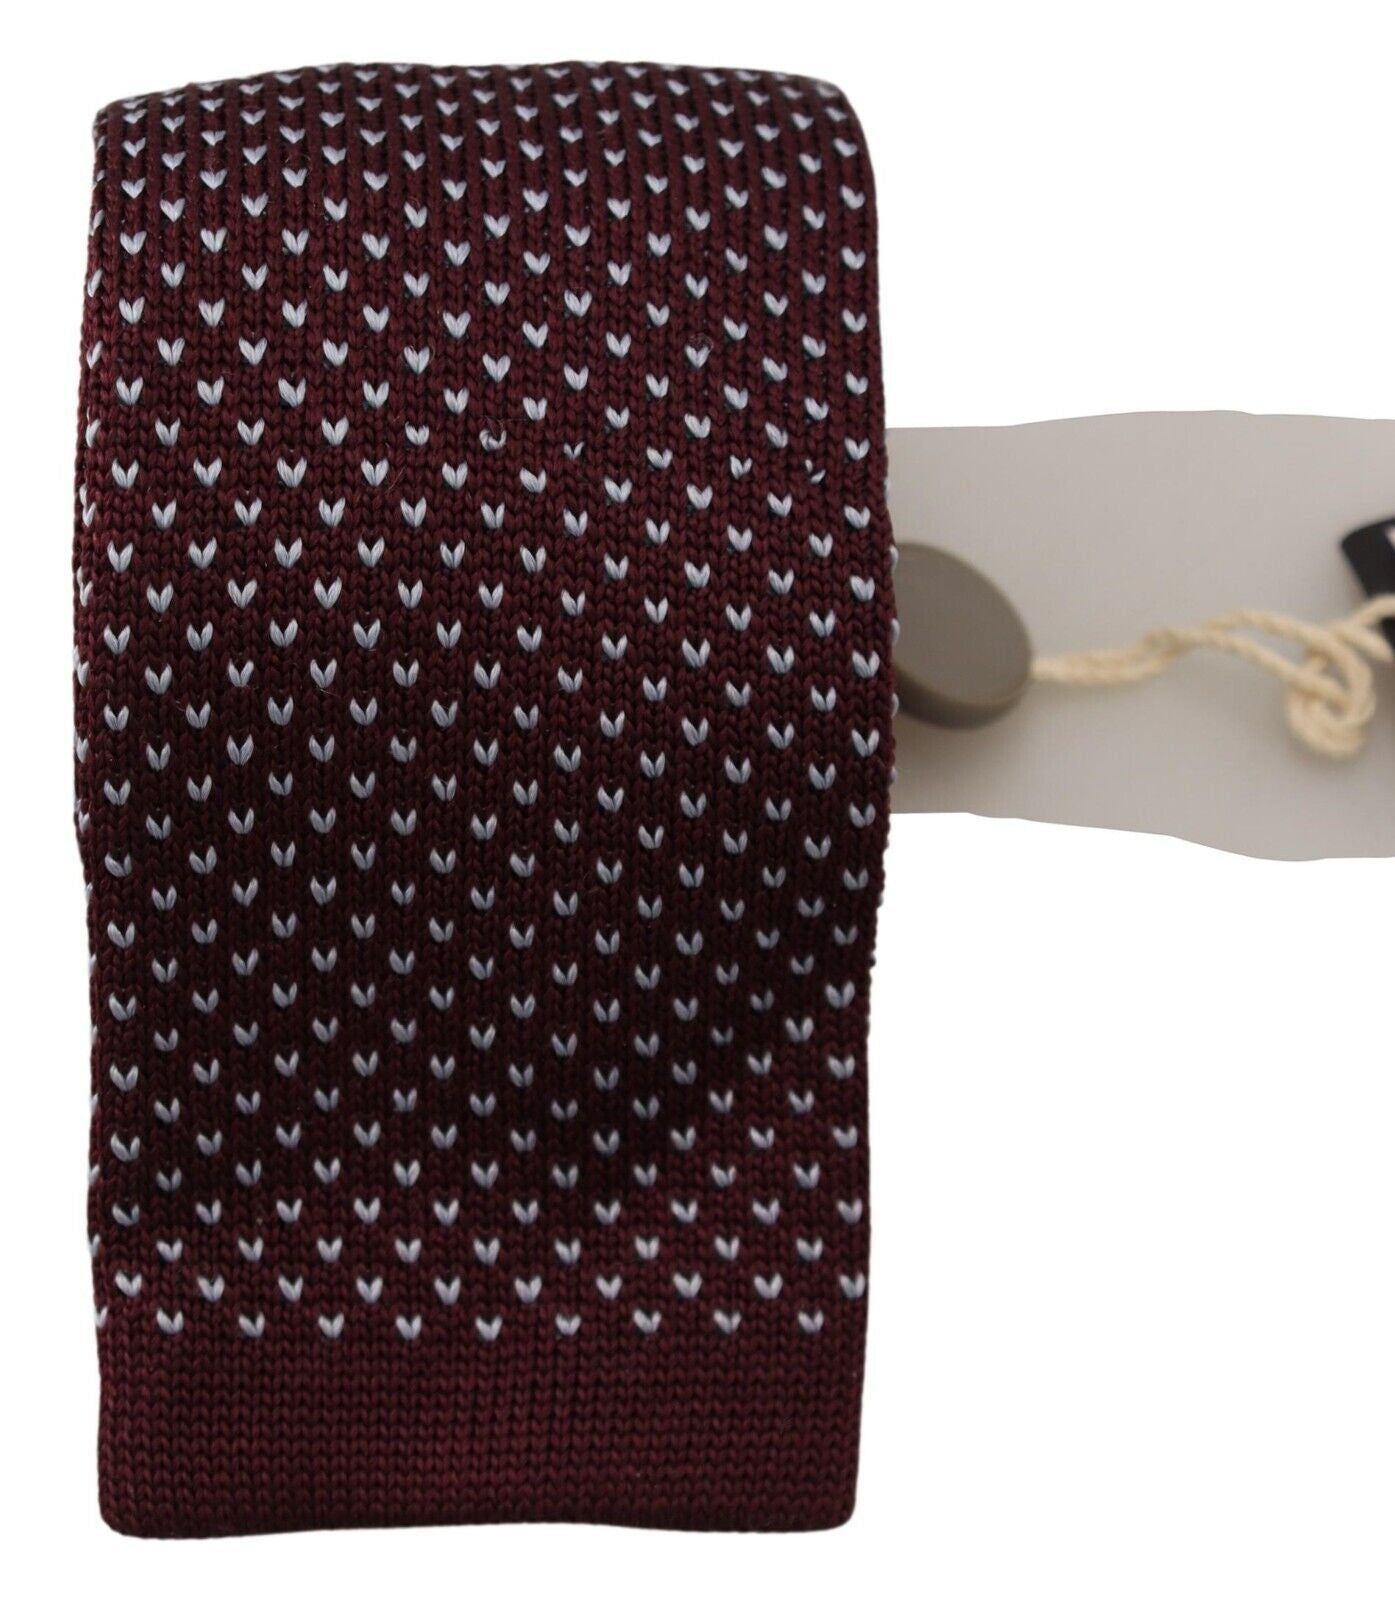 Lanvin Bordeaux Cravatta classica trapuntata da uomo regolabile in seta